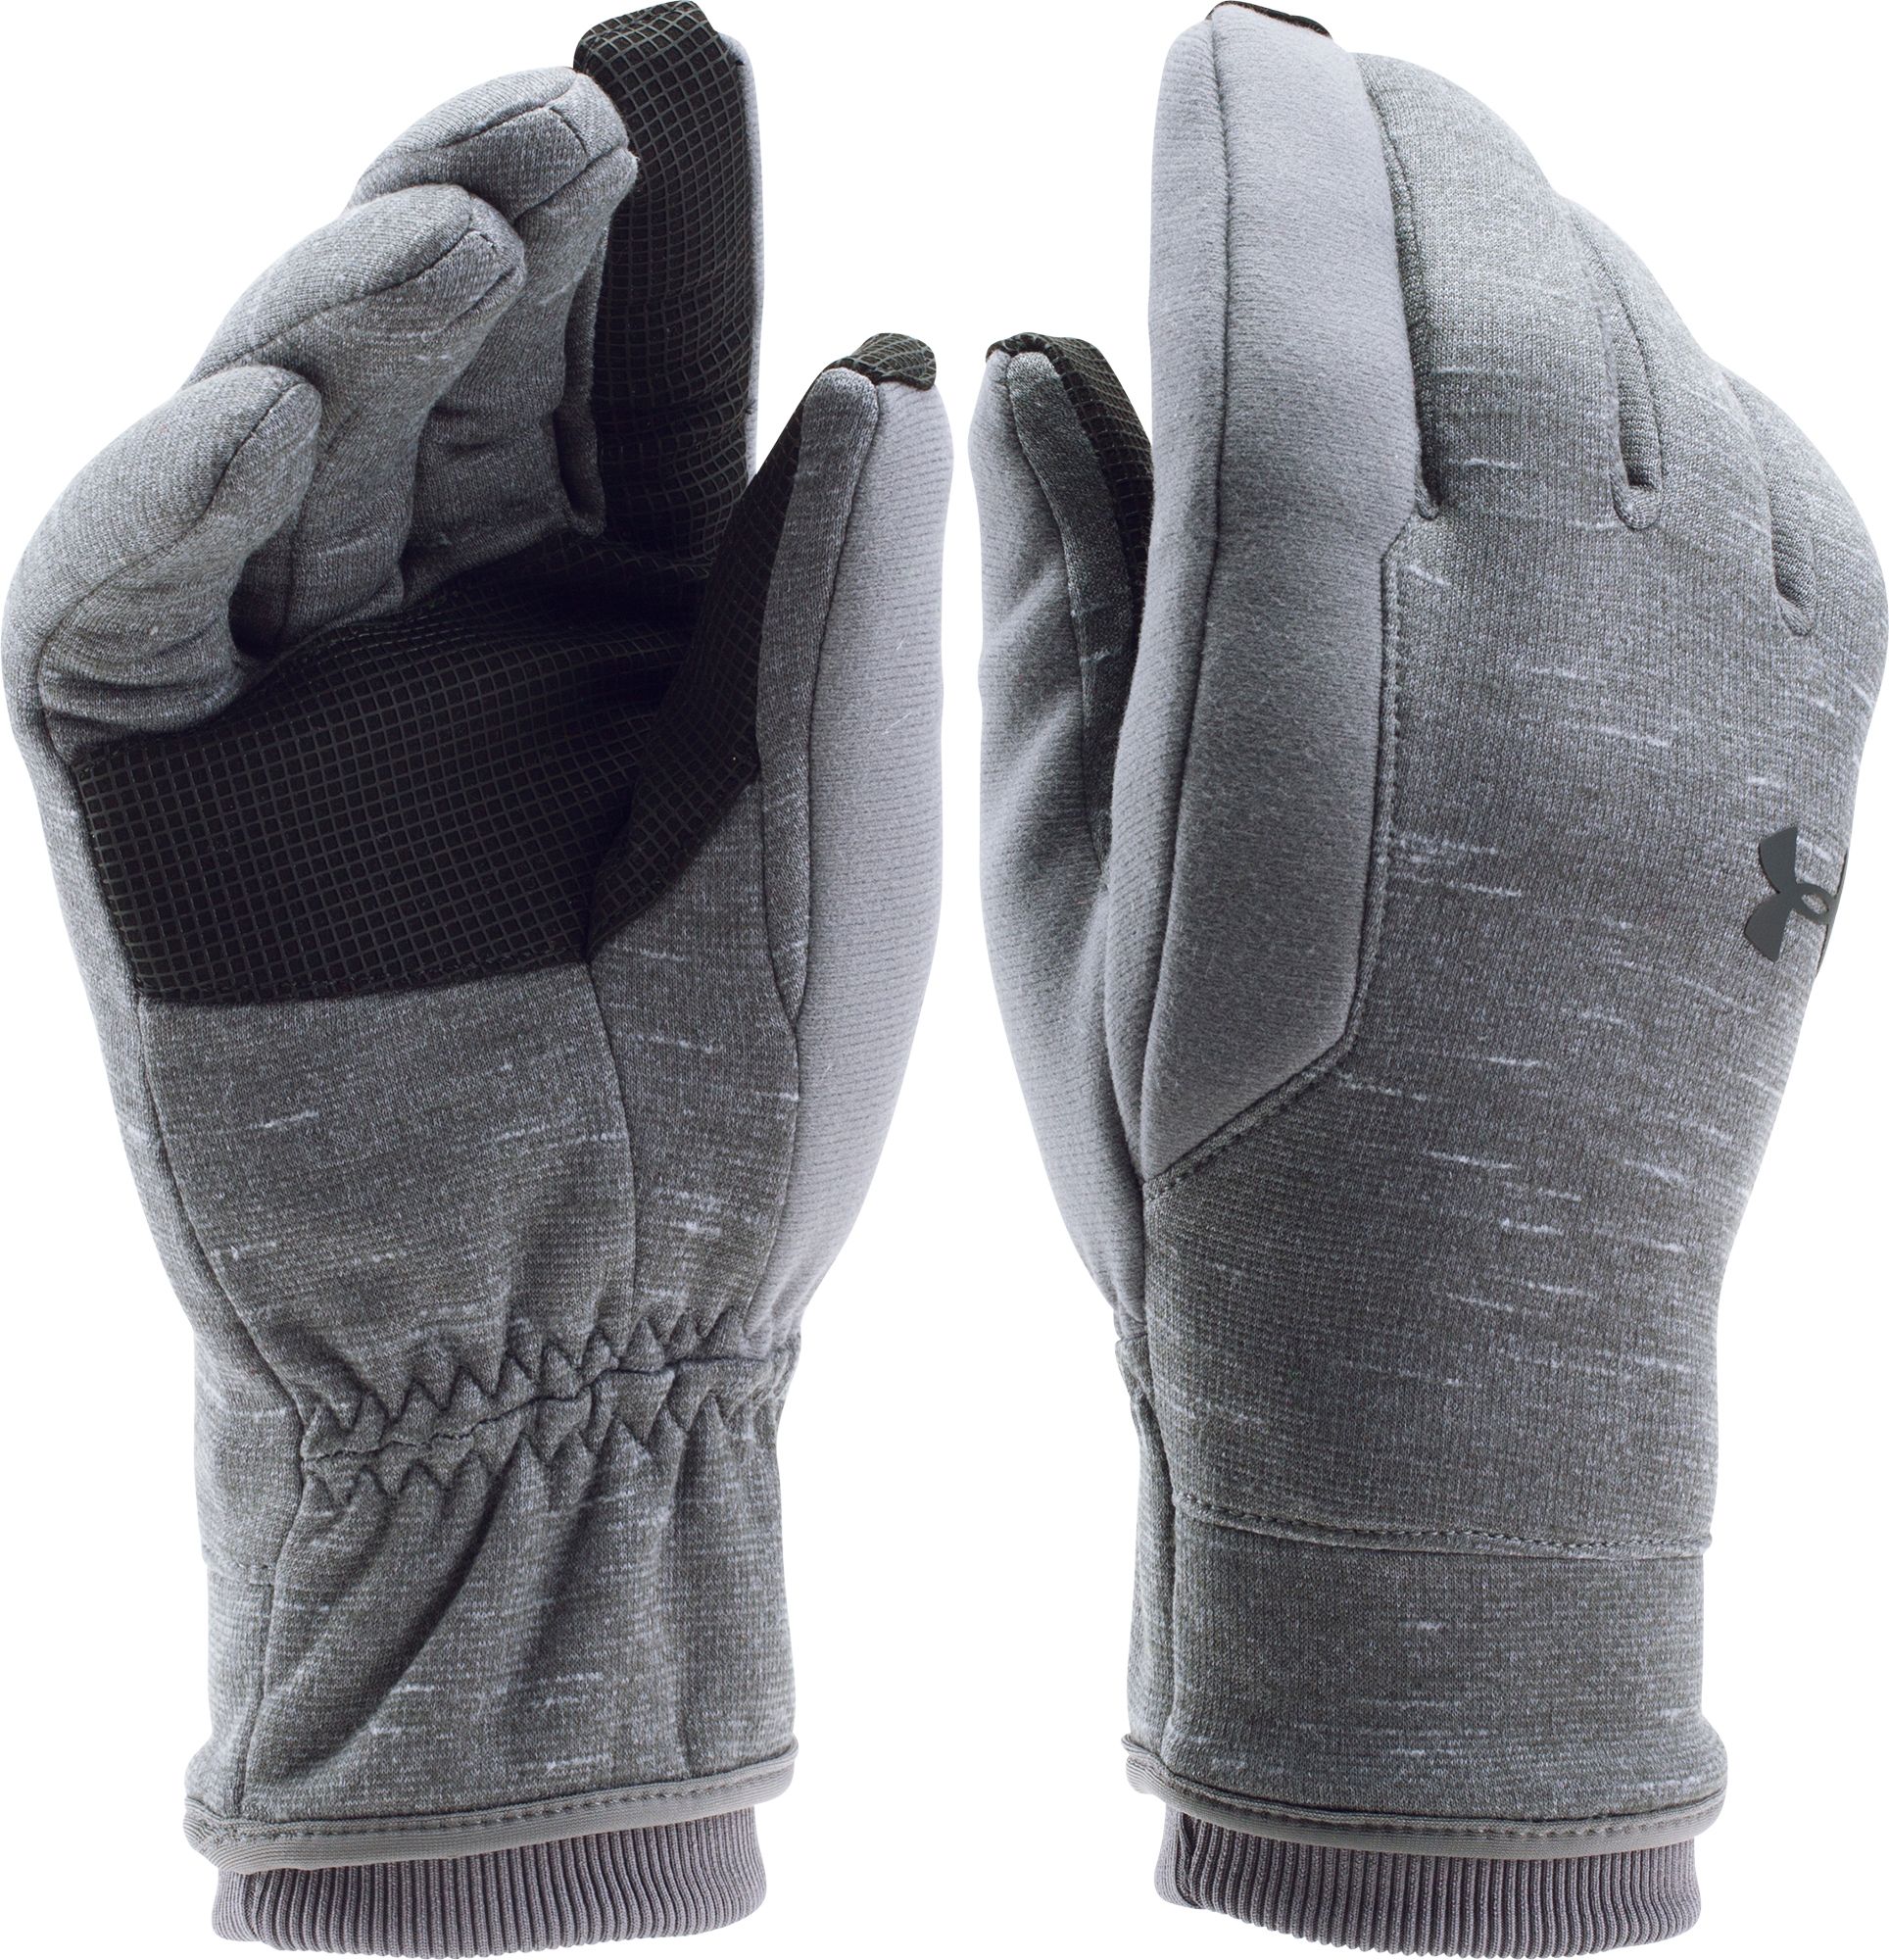 under armor winter gloves